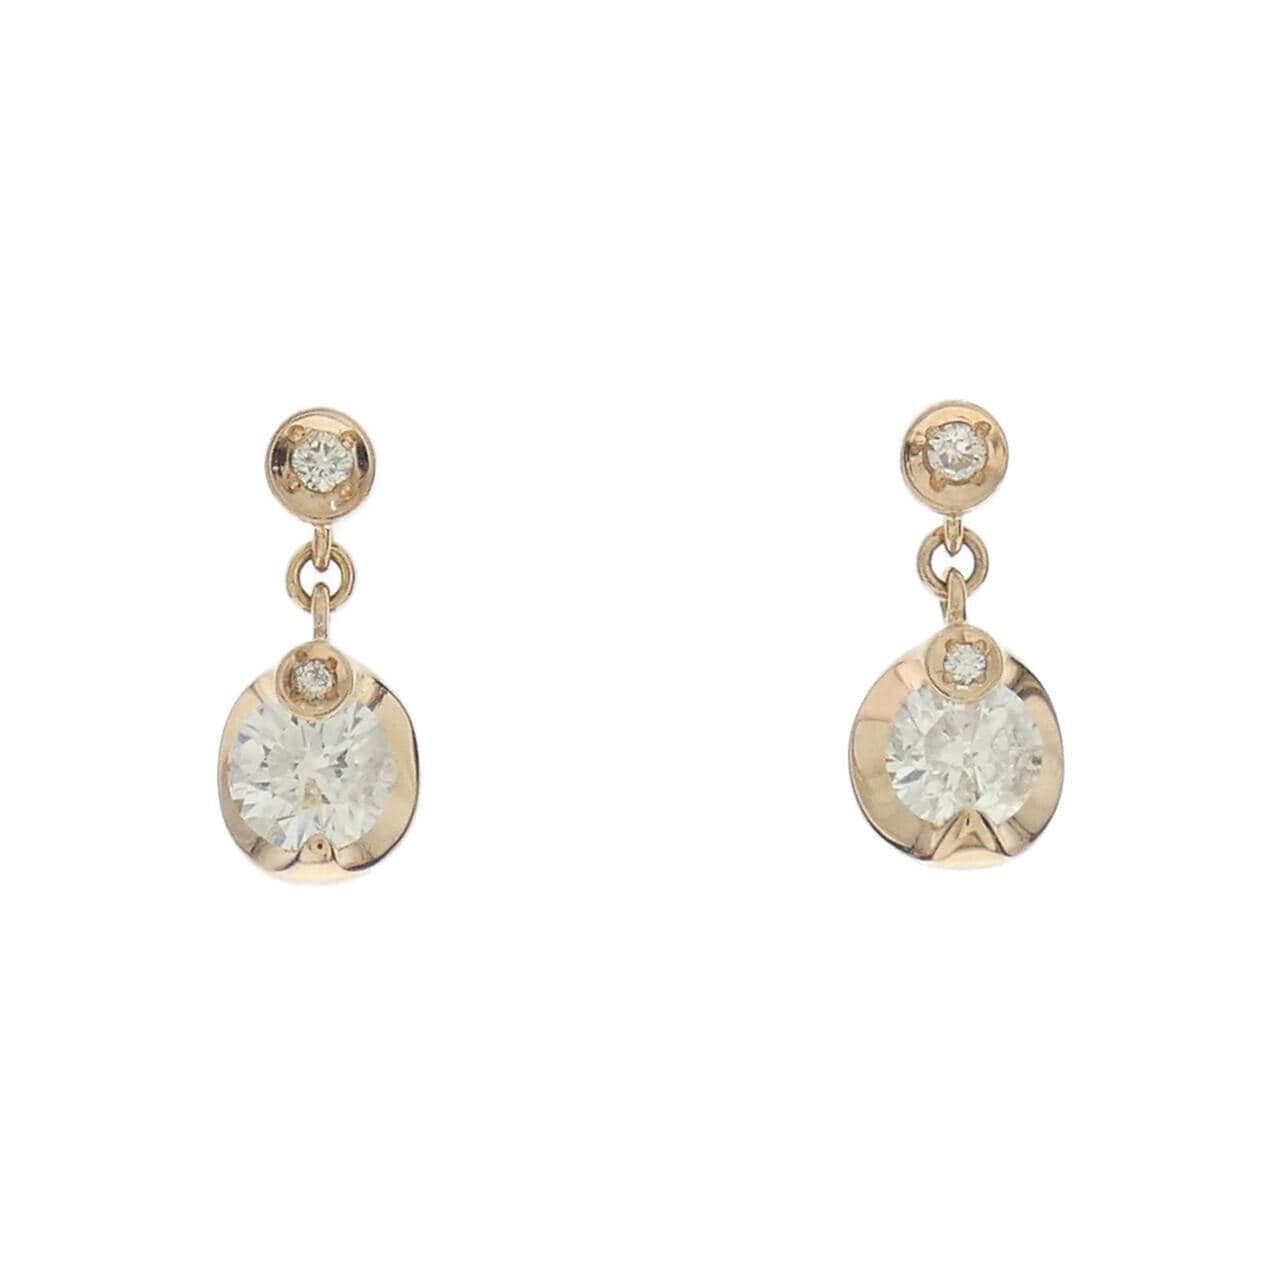 K18PG Diamond earrings 0.474CT